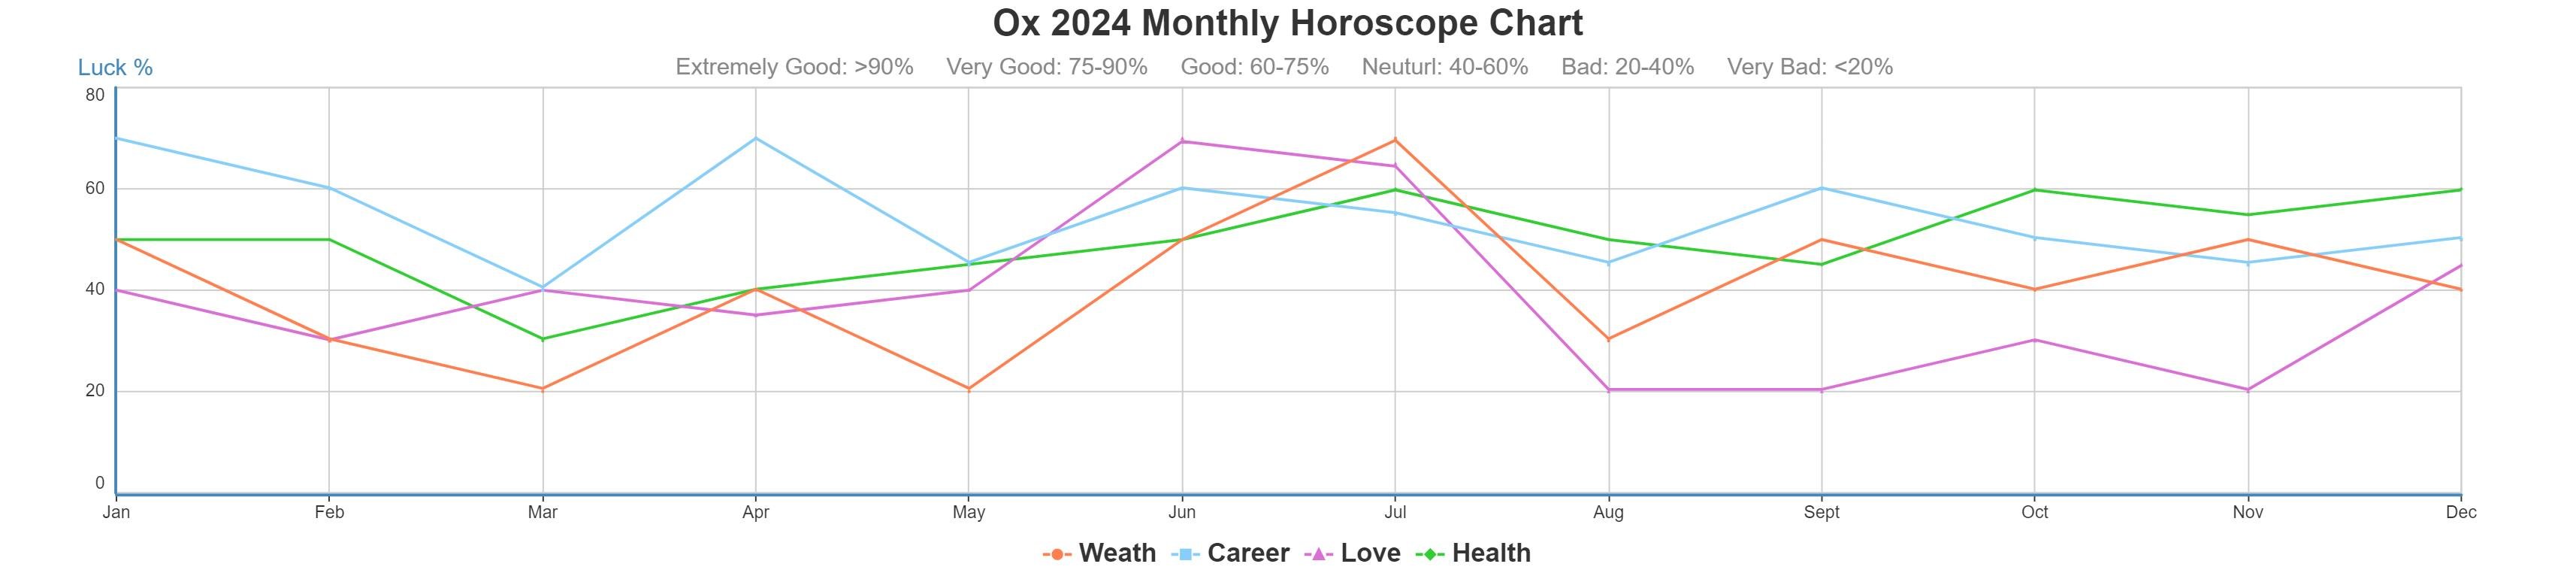 Ox 2024 monthly horoscope